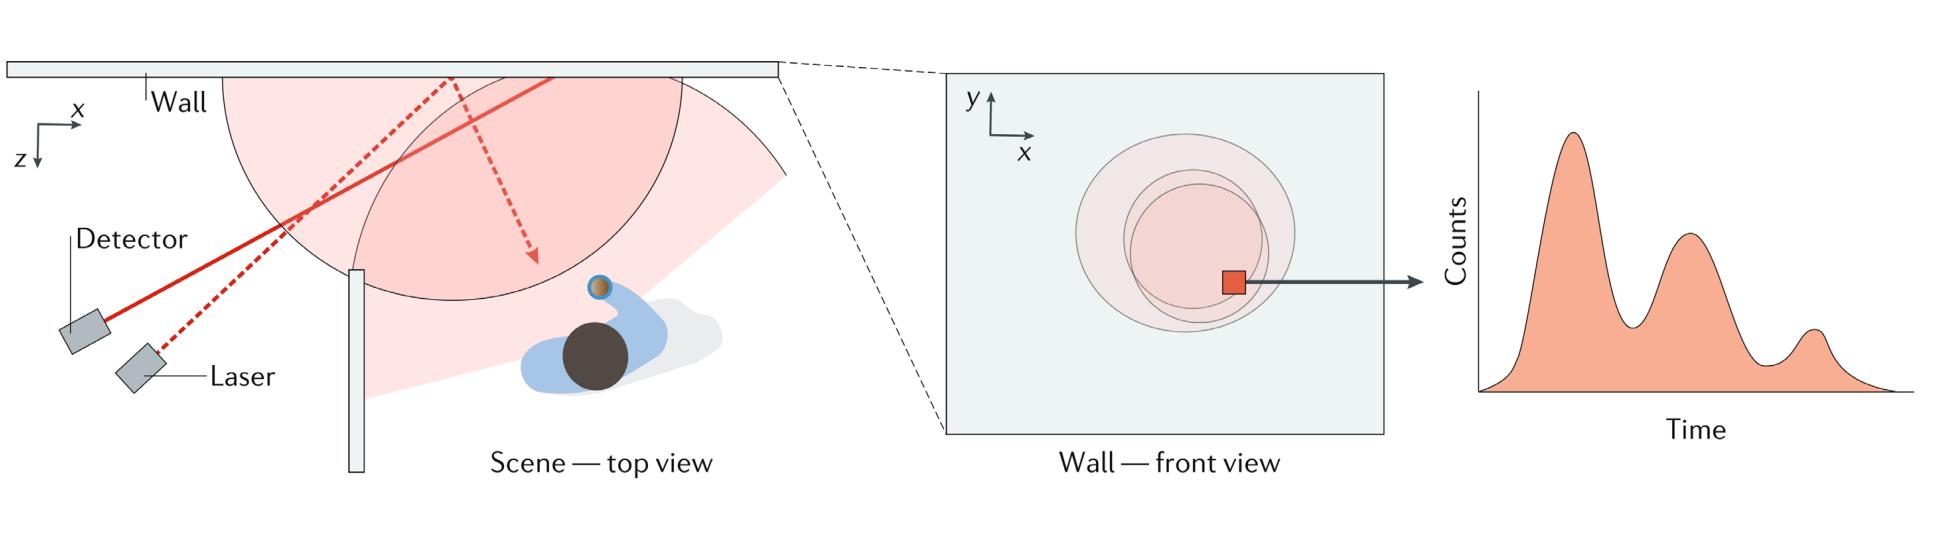 光的传播过程：①发射 ②前面漫反射diffusion产生球面波 ③物体表面反射 ④物体反射的到墙 ⑤墙再次反射